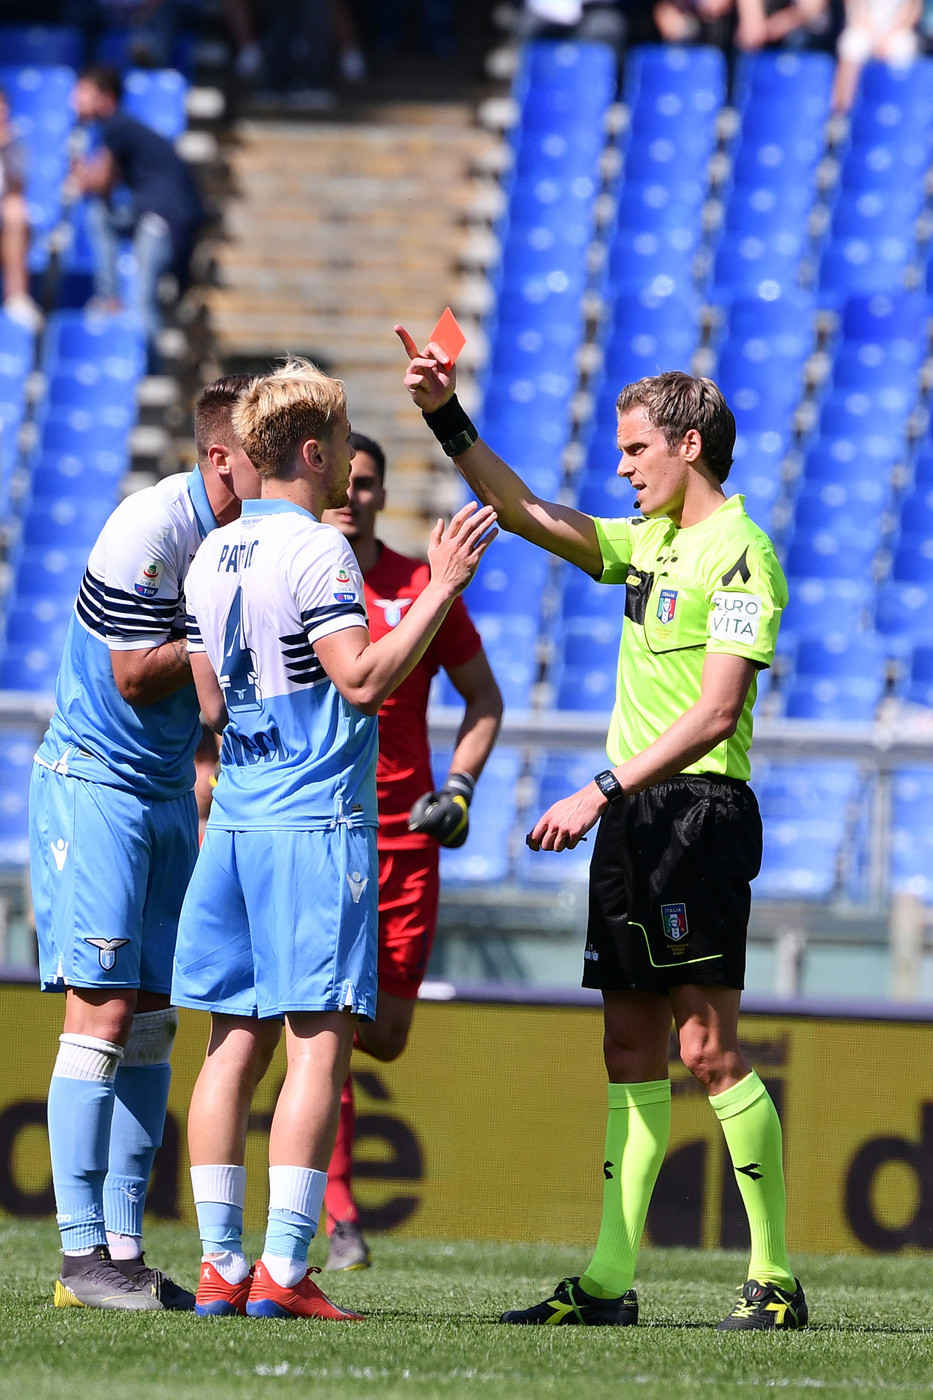 Serie A, Lazio-Chievo 1-2 | Il fotoracconto